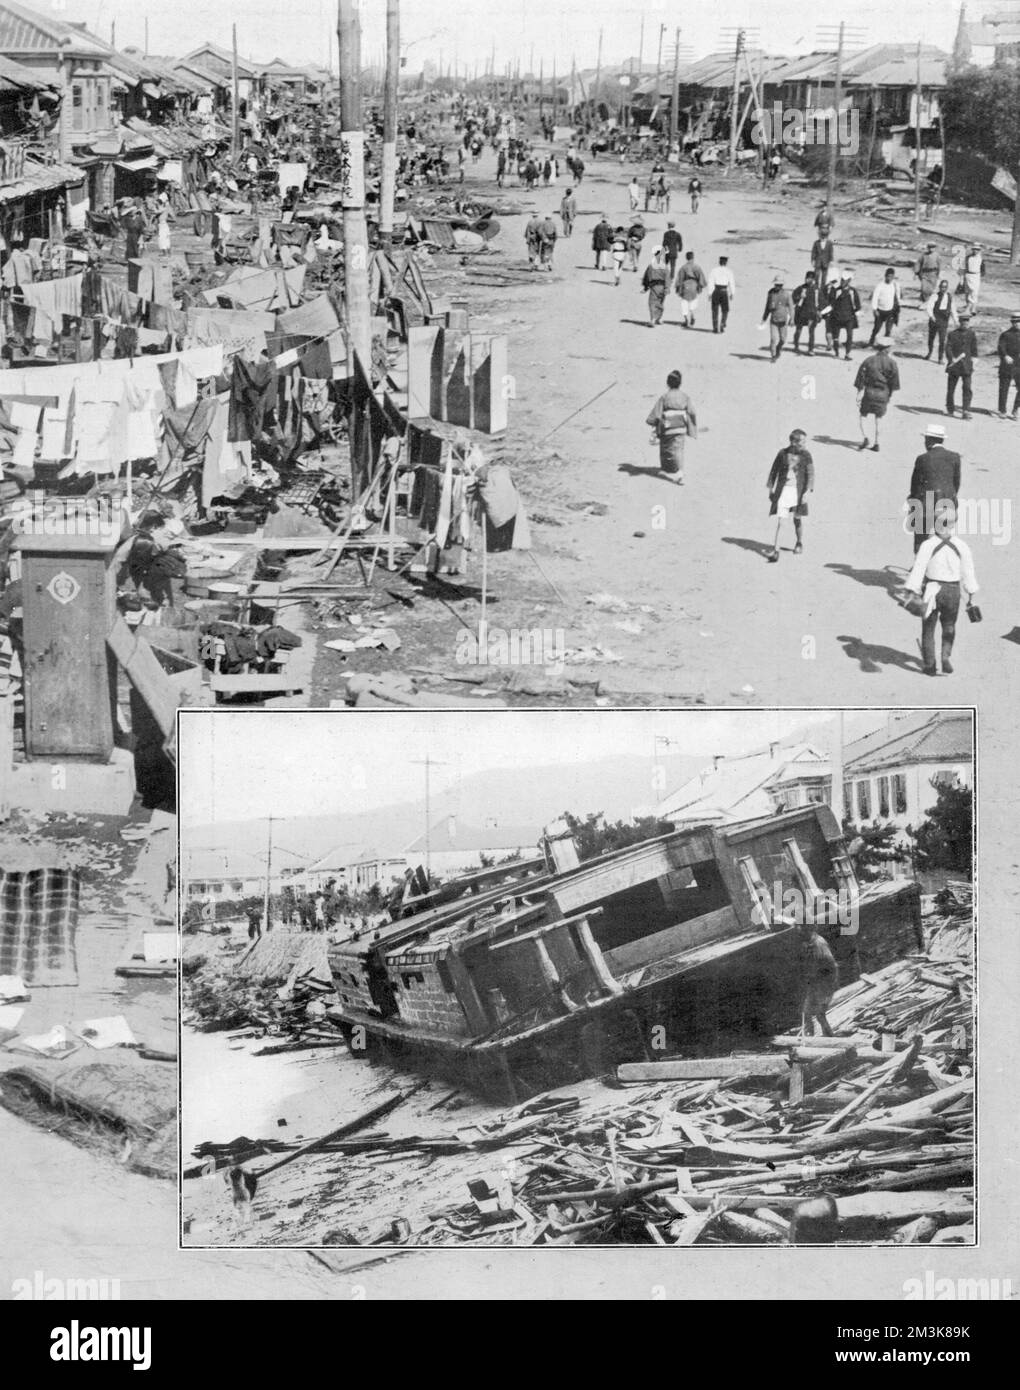 Tremblement de terre catastrophique qui a frappé Tokyo et la ville voisine de Yokohama en 1923. Le tremblement de terre s'est produit à midi le 1st septembre, à l'époque où de nombreuses personnes préparaient leurs repas. Les incendies se propagent détruisant tout ce que le tremblement de terre avait laissé derrière lui. Le nombre de morts a augmenté à plus de 70000, et beaucoup plus de personnes ont laissé sans abri. Date: 1923 Banque D'Images